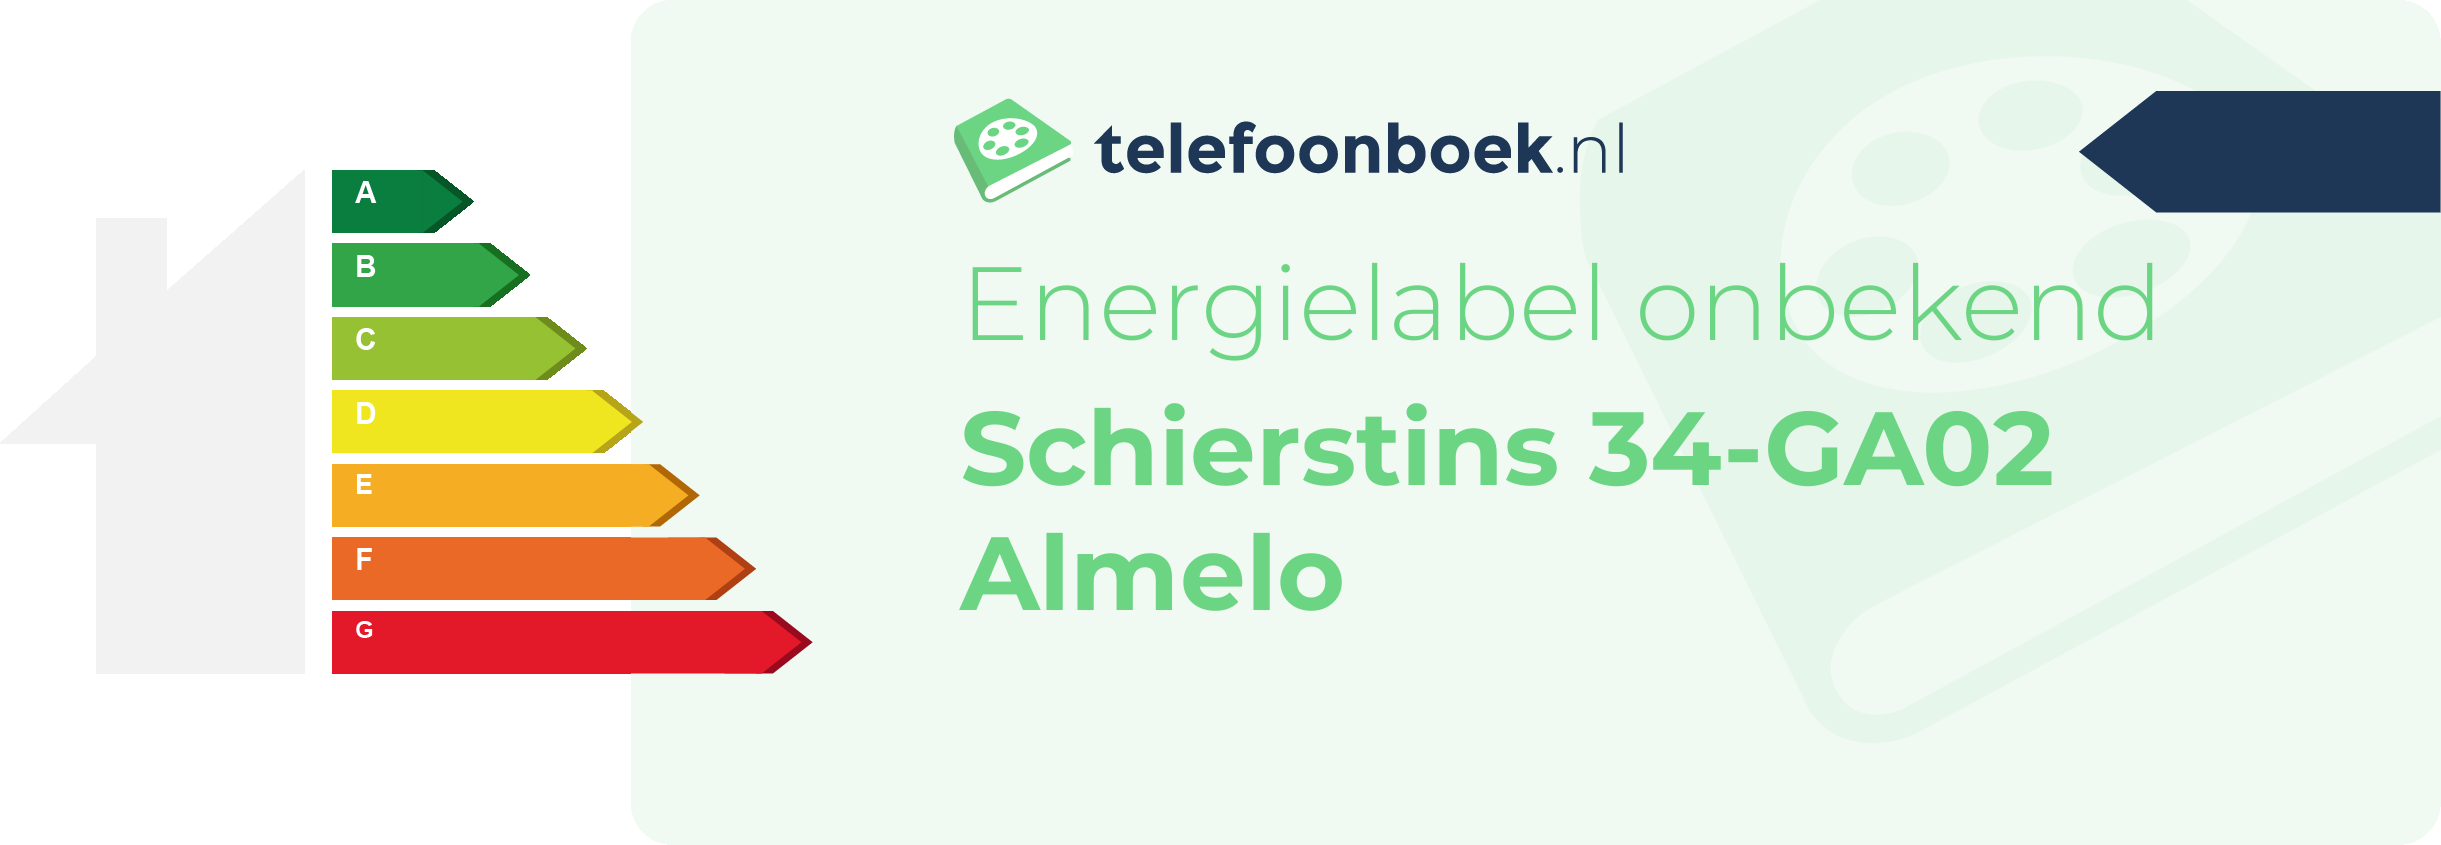 Energielabel Schierstins 34-GA02 Almelo